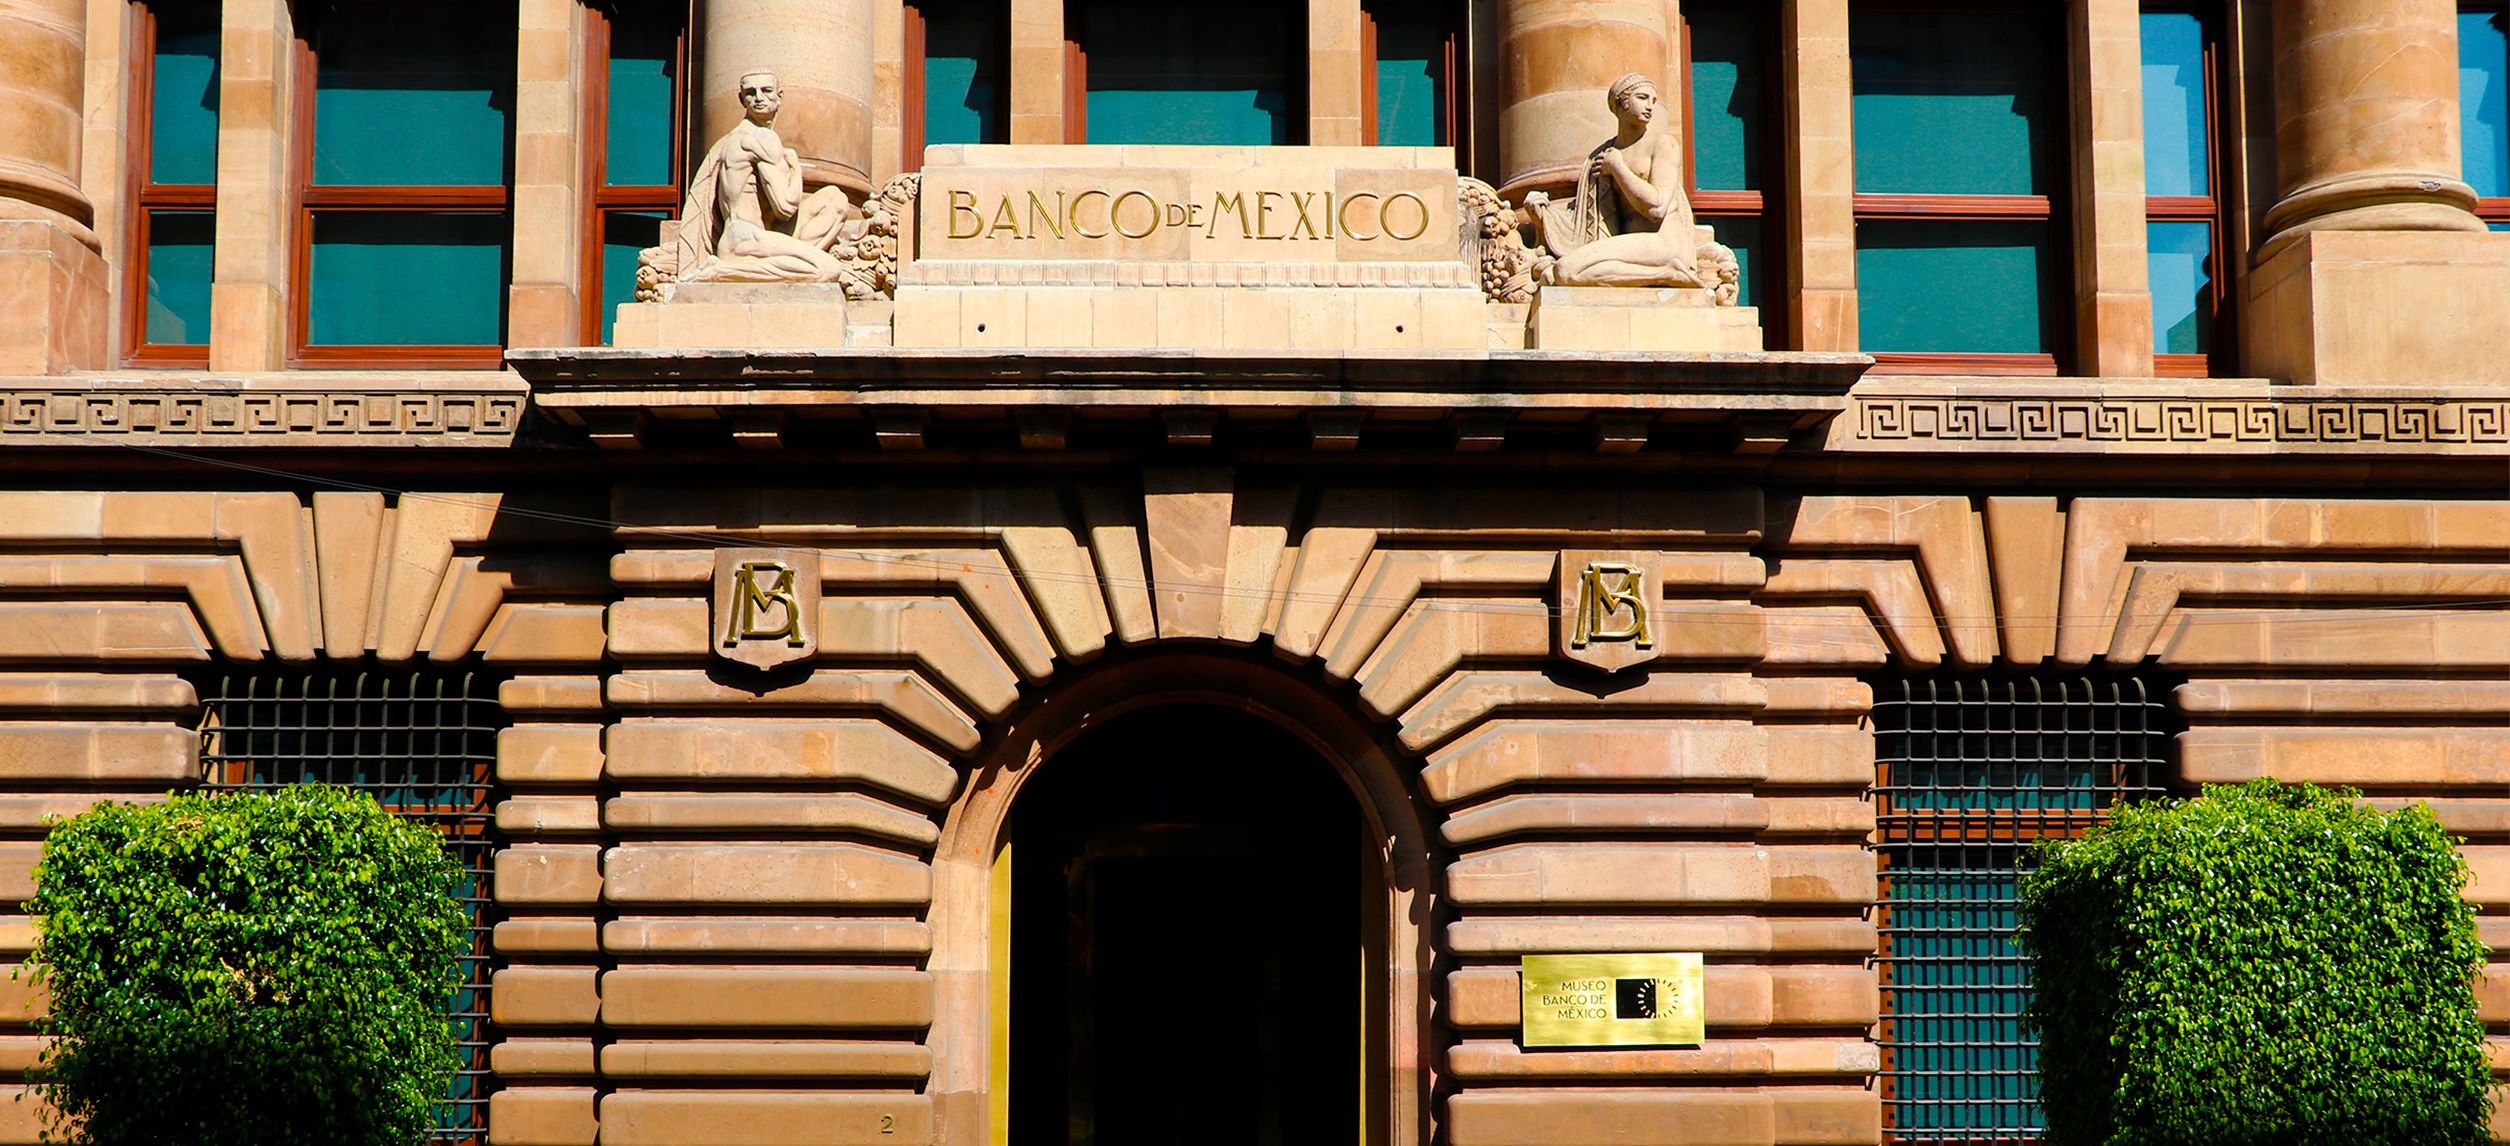 About Banco de Mexico museum